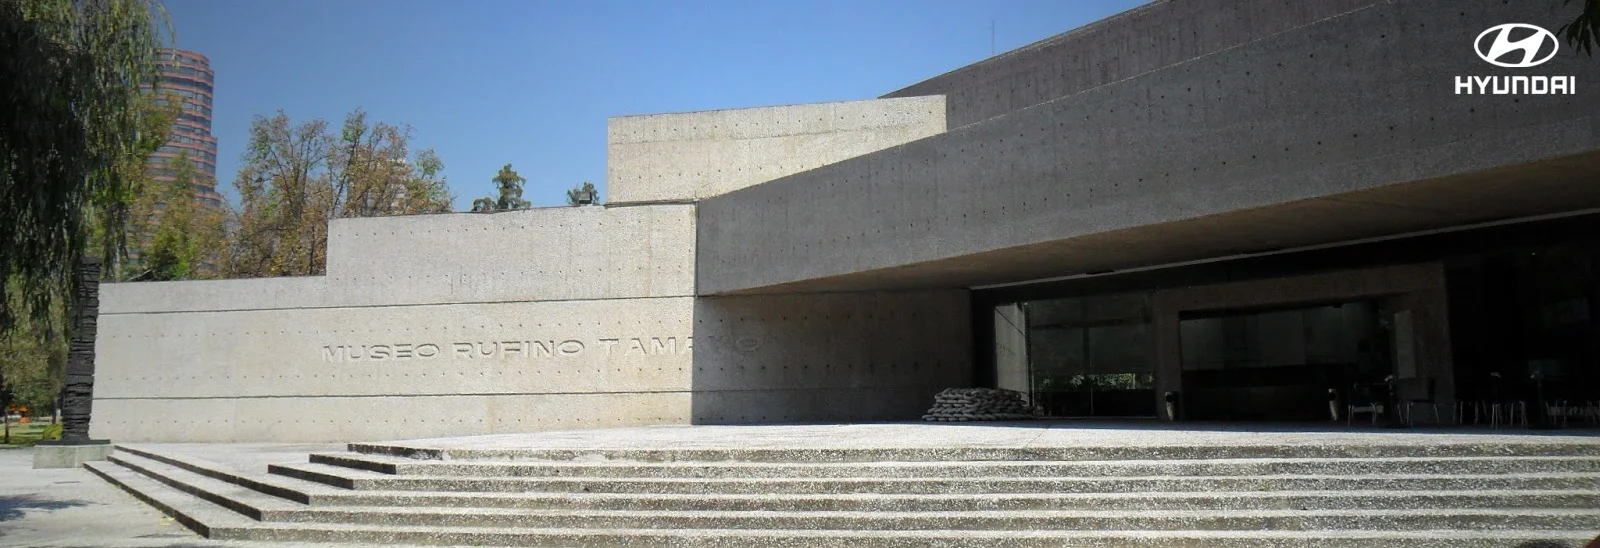 Museo Tamayo, Museos en CDMX, Museos con Hyundai, Arte Contemporáneo